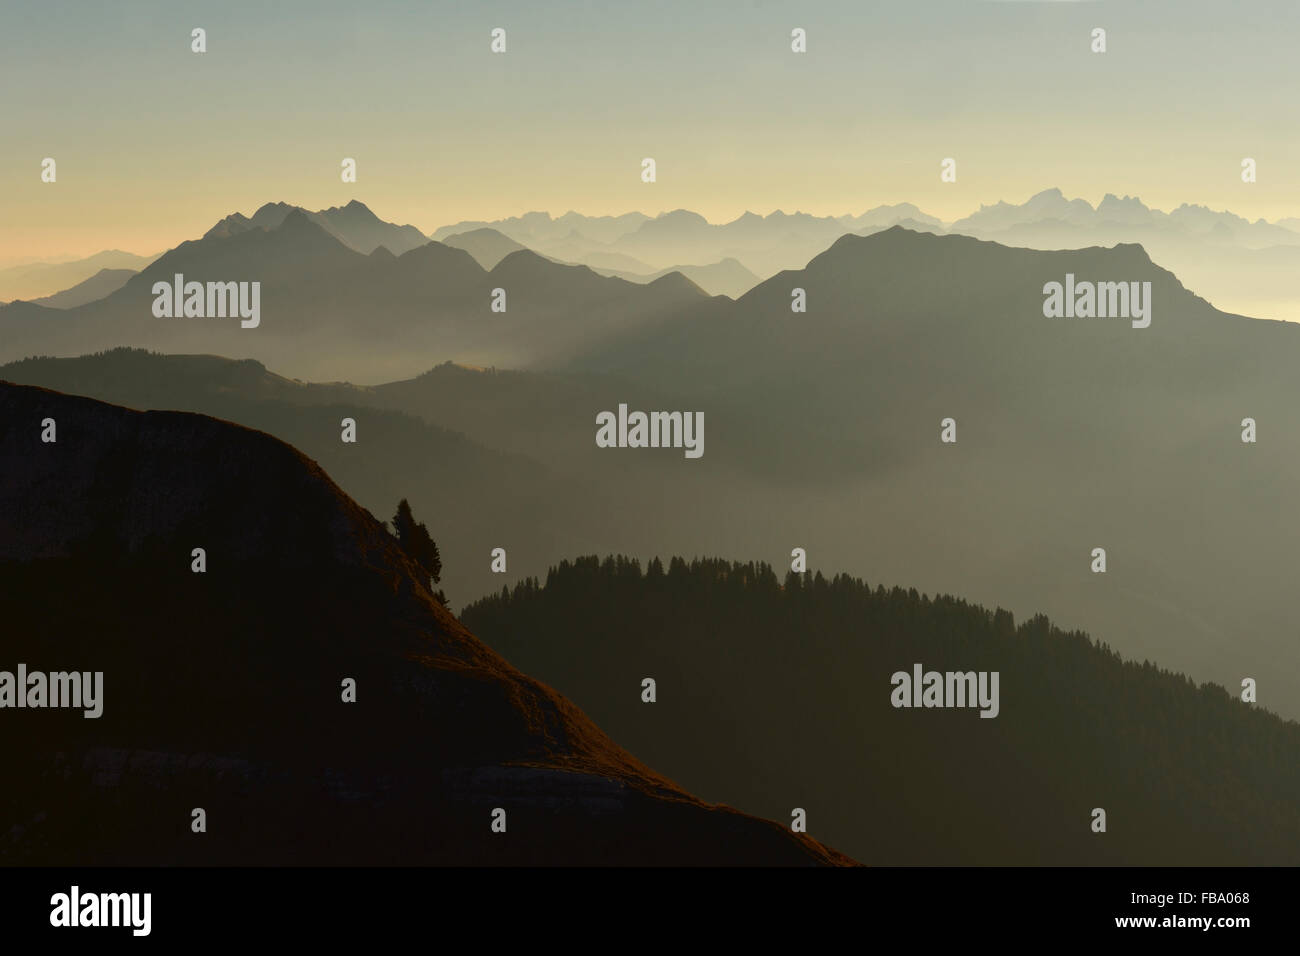 Kurz vor Sonnenaufgang über dem Berner Oberland, Berg-Silhouetten, Dunst reicht in den frühen Morgenstunden, Schweizer Alpen, Schweiz. Stockfoto